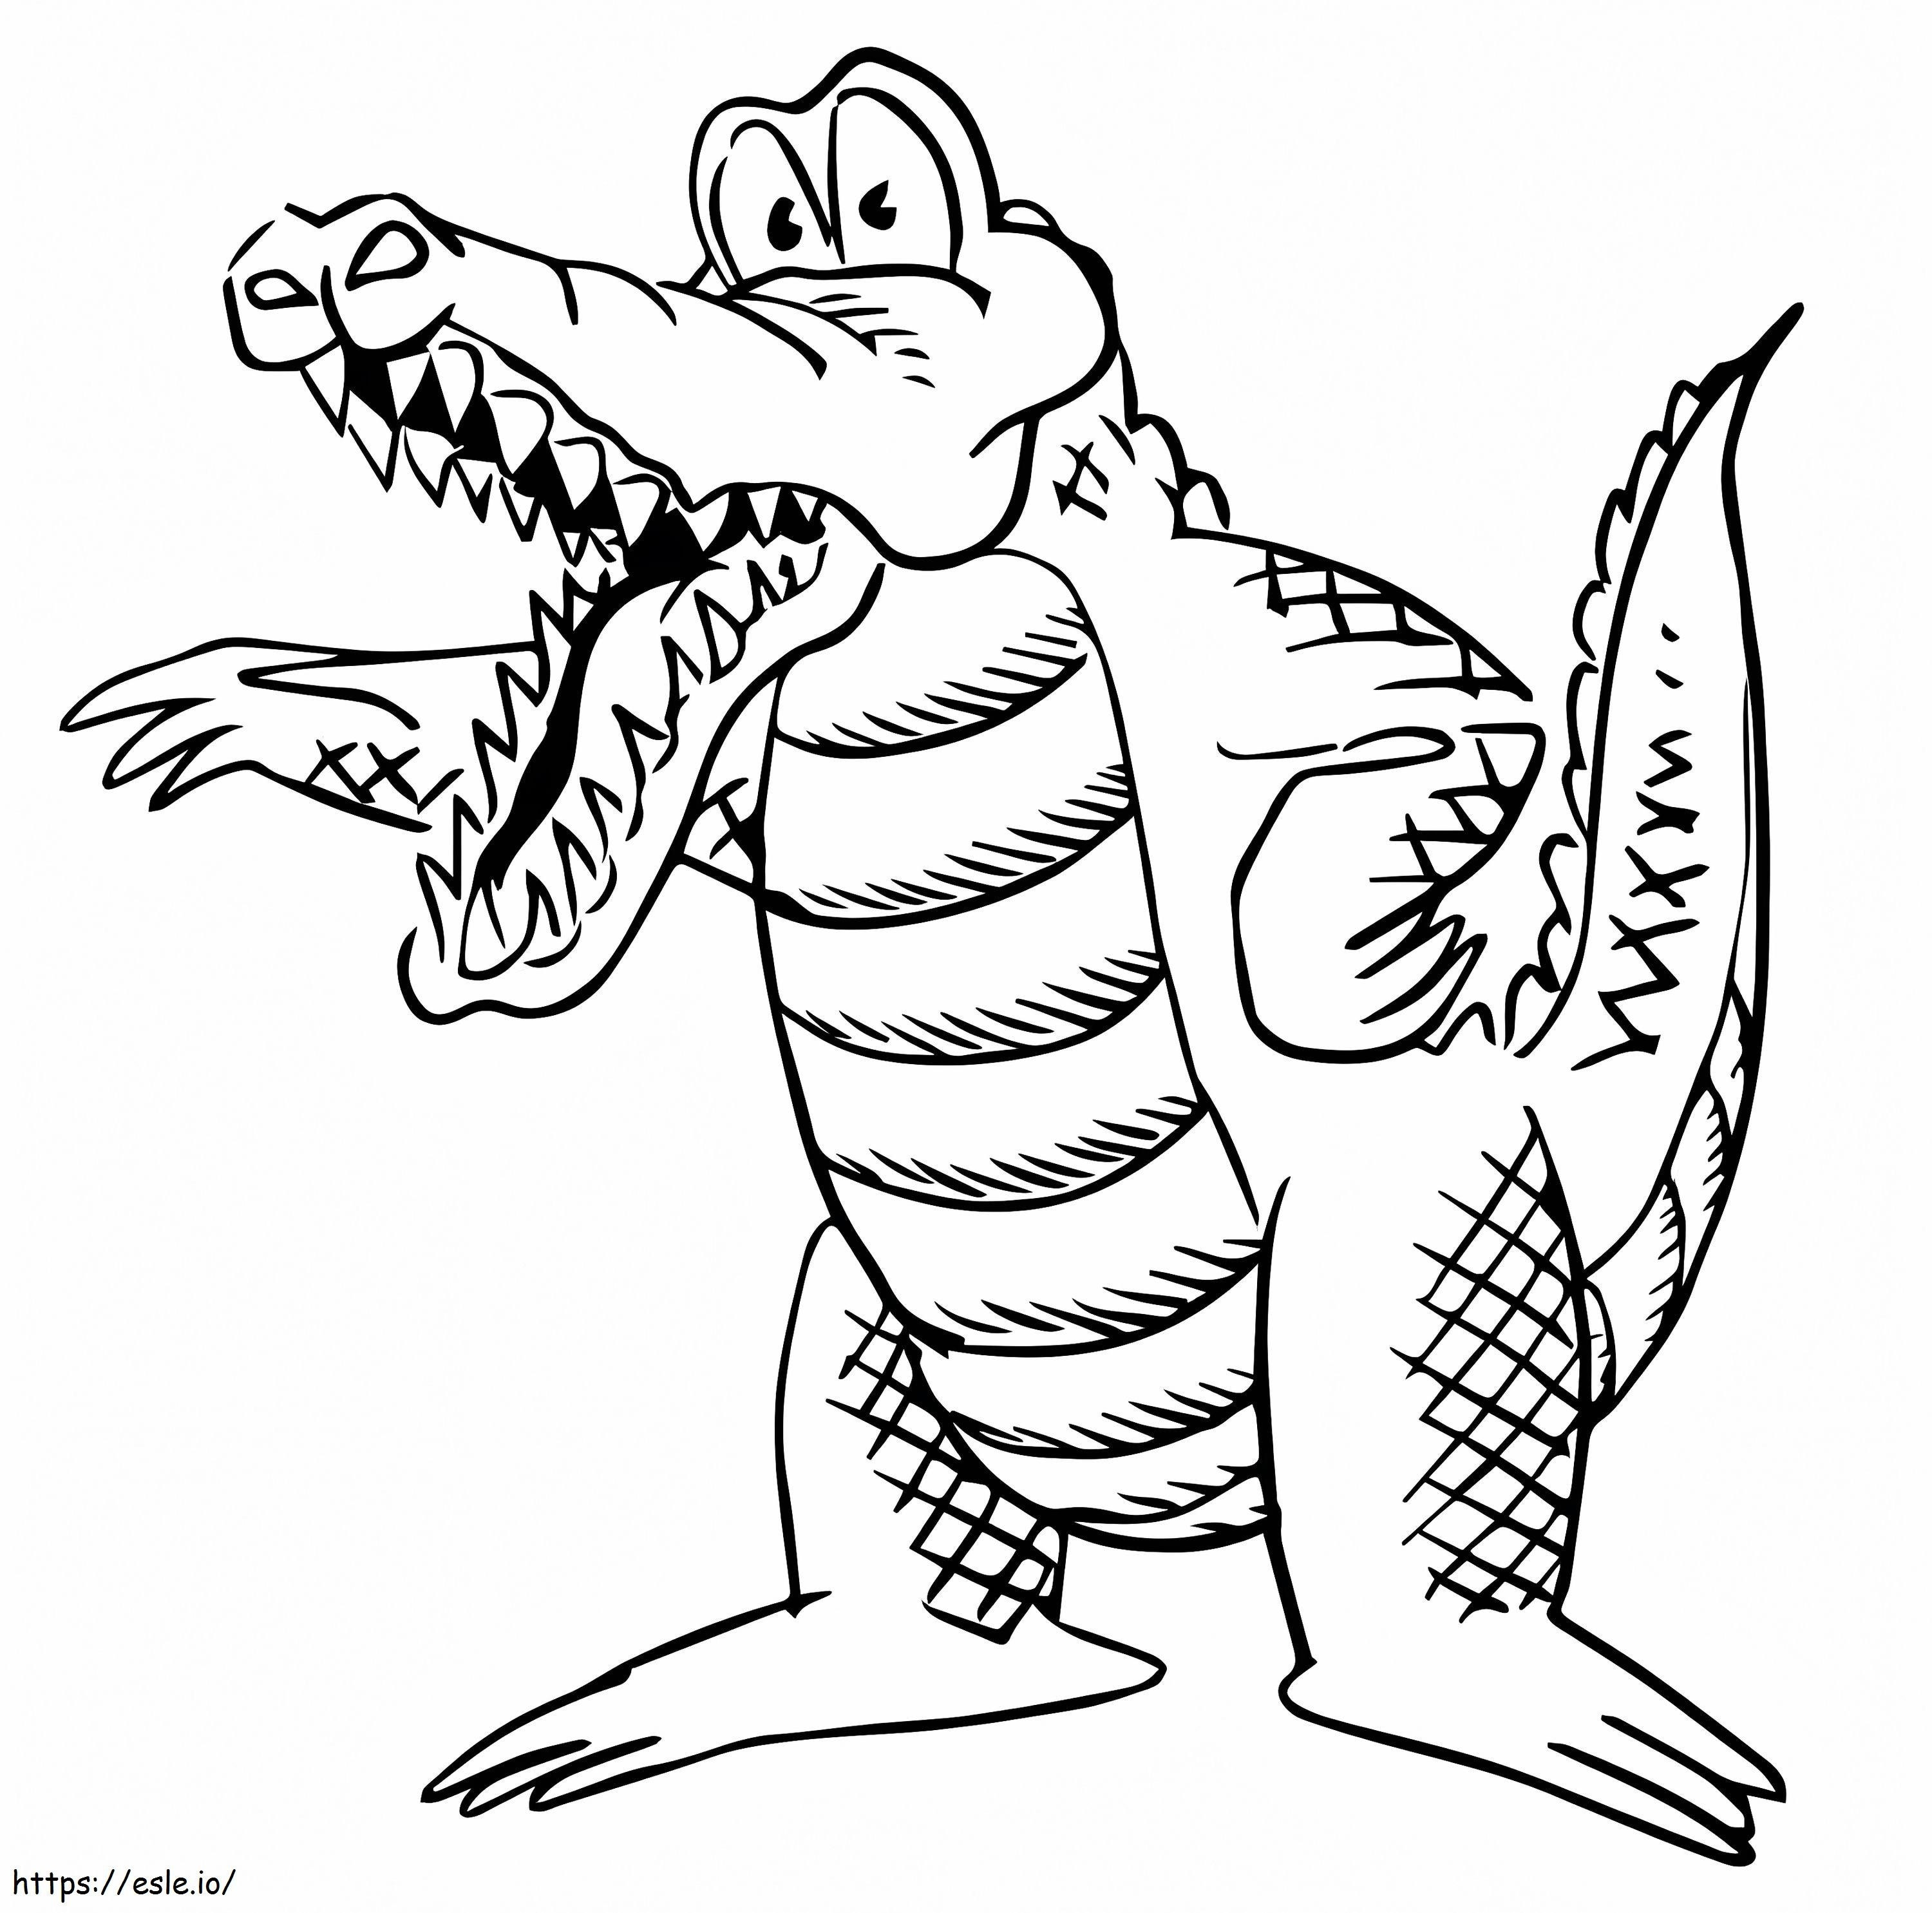 Wściekły aligator kreskówka kolorowanka